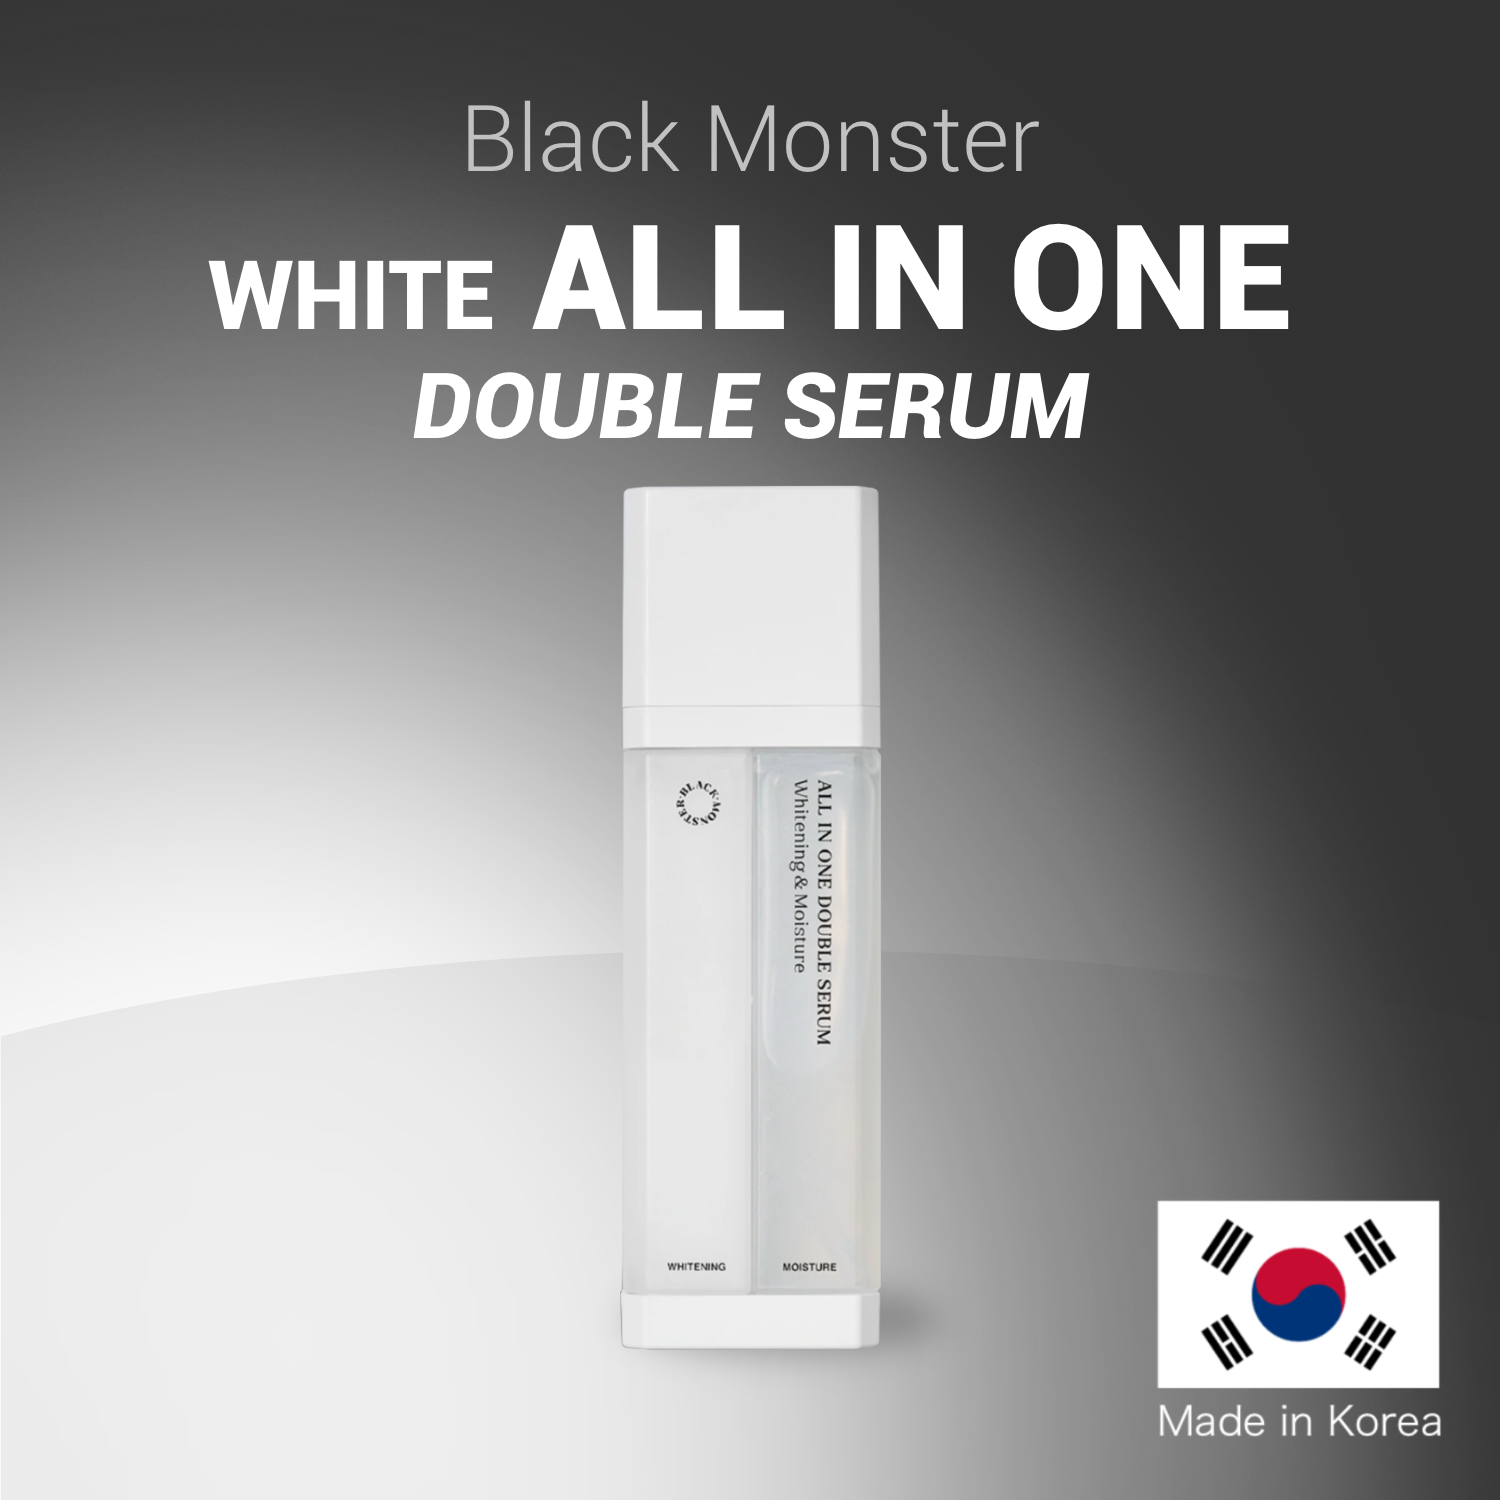 BLACK MONSTER White All in One Double Serum Moisturizing & Whitening Made in Korea